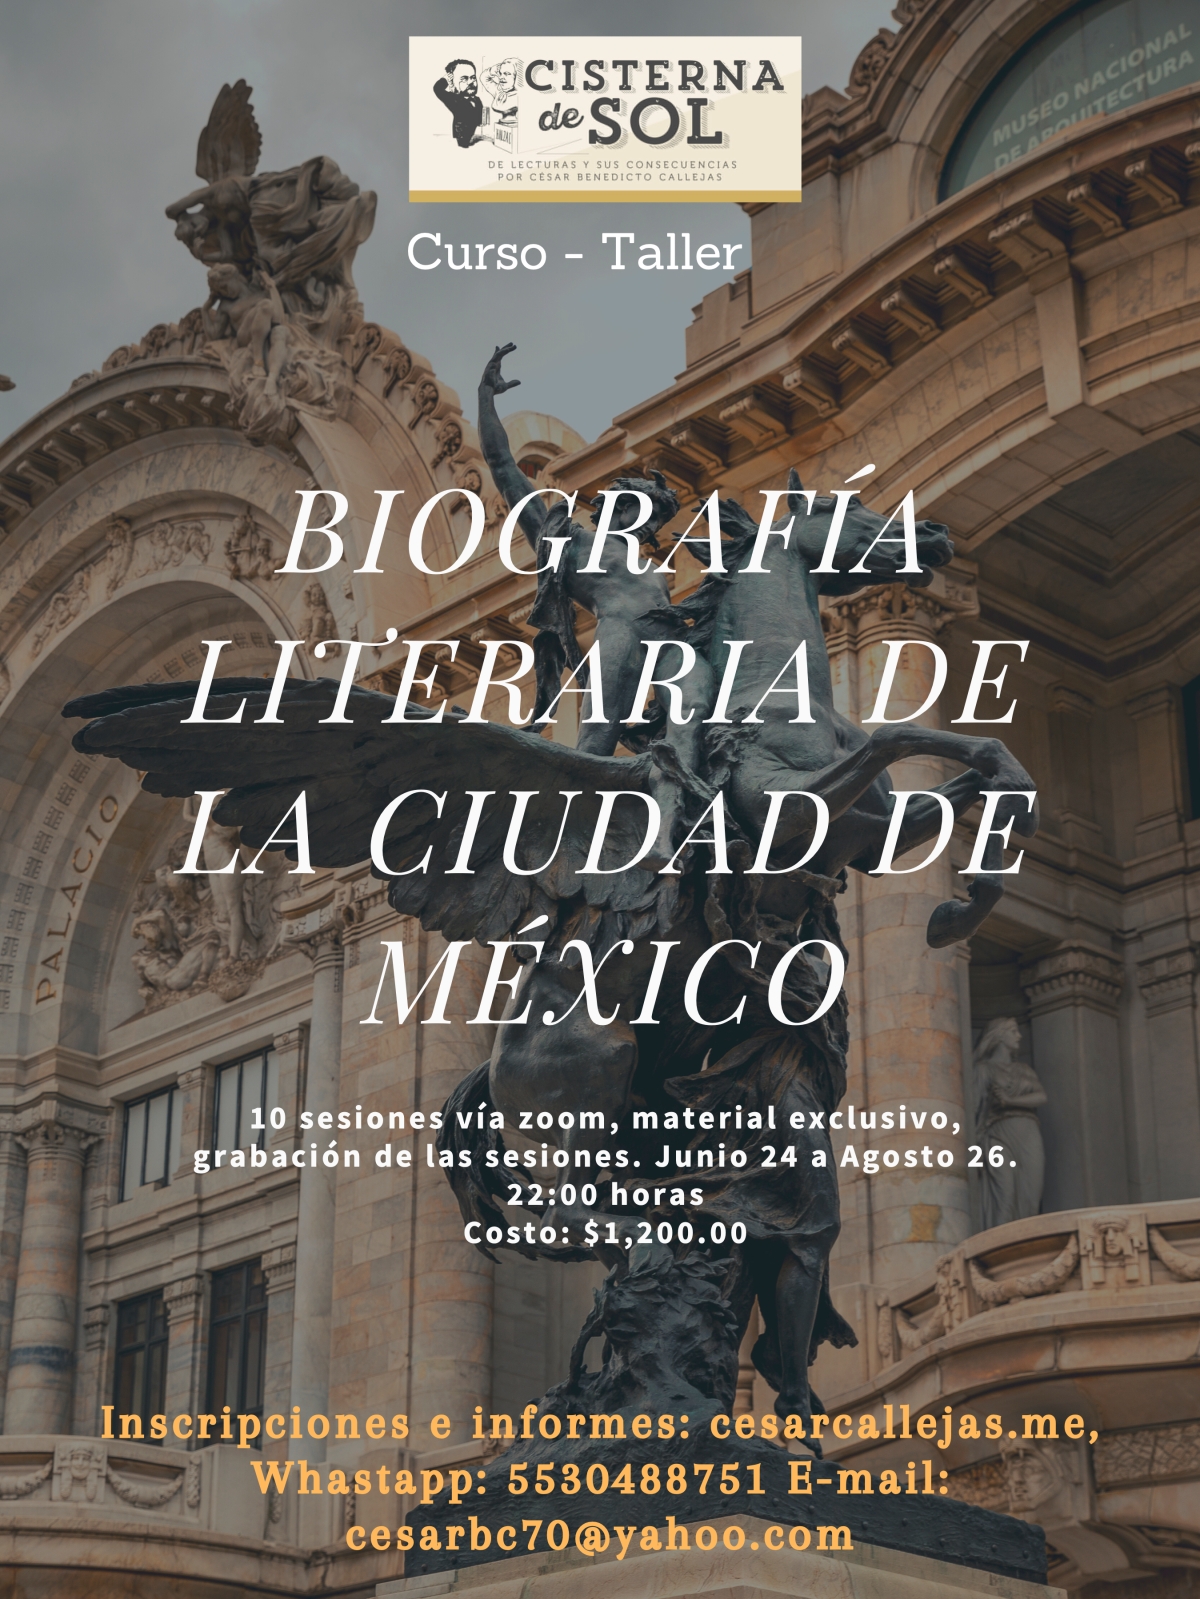 Curso-Taller Biografía Literaria de la Ciudad de México